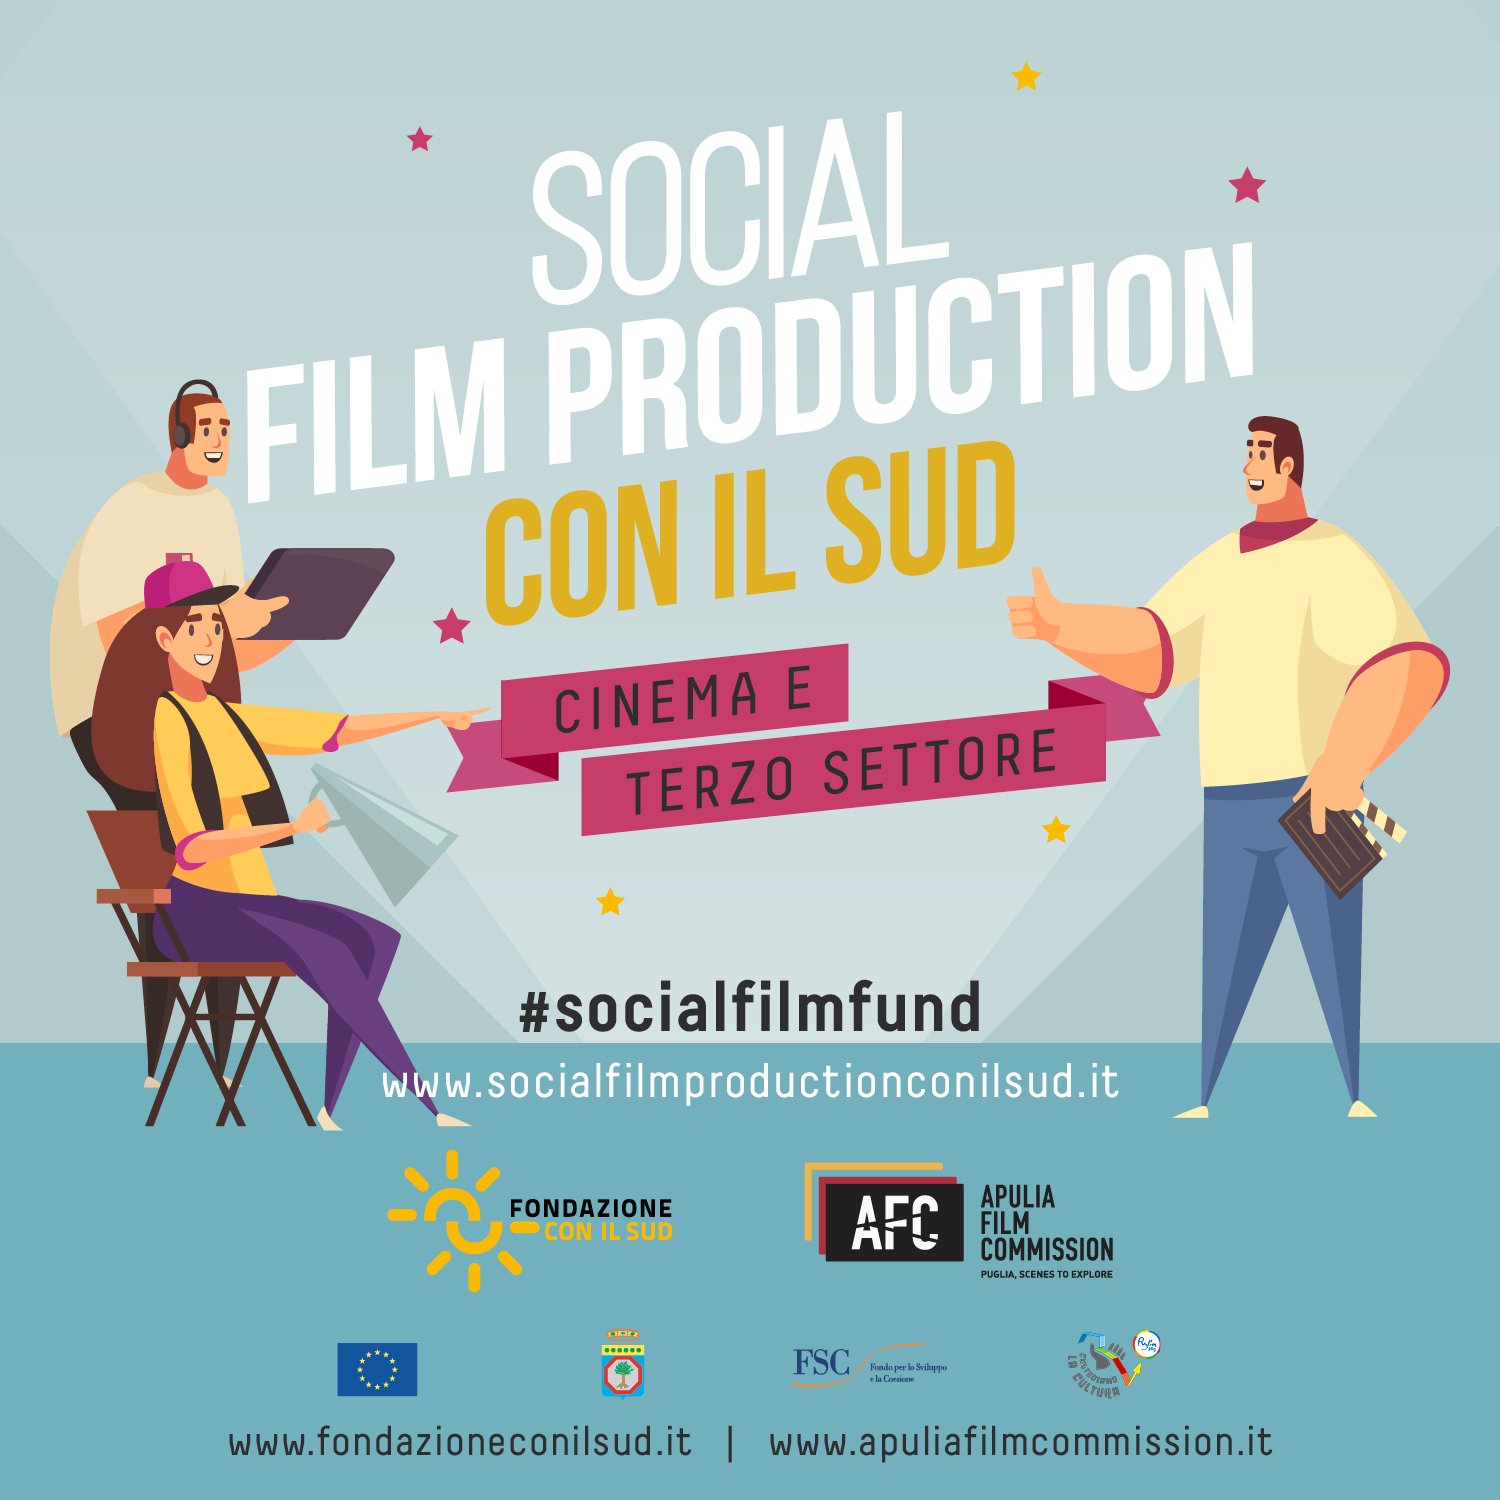 SOCIAL FILM PRODUCTION CON IL SUD, “IL SENTIERO DEI LUPI” PRIMO NELLA SEZIONE AMBIENTE